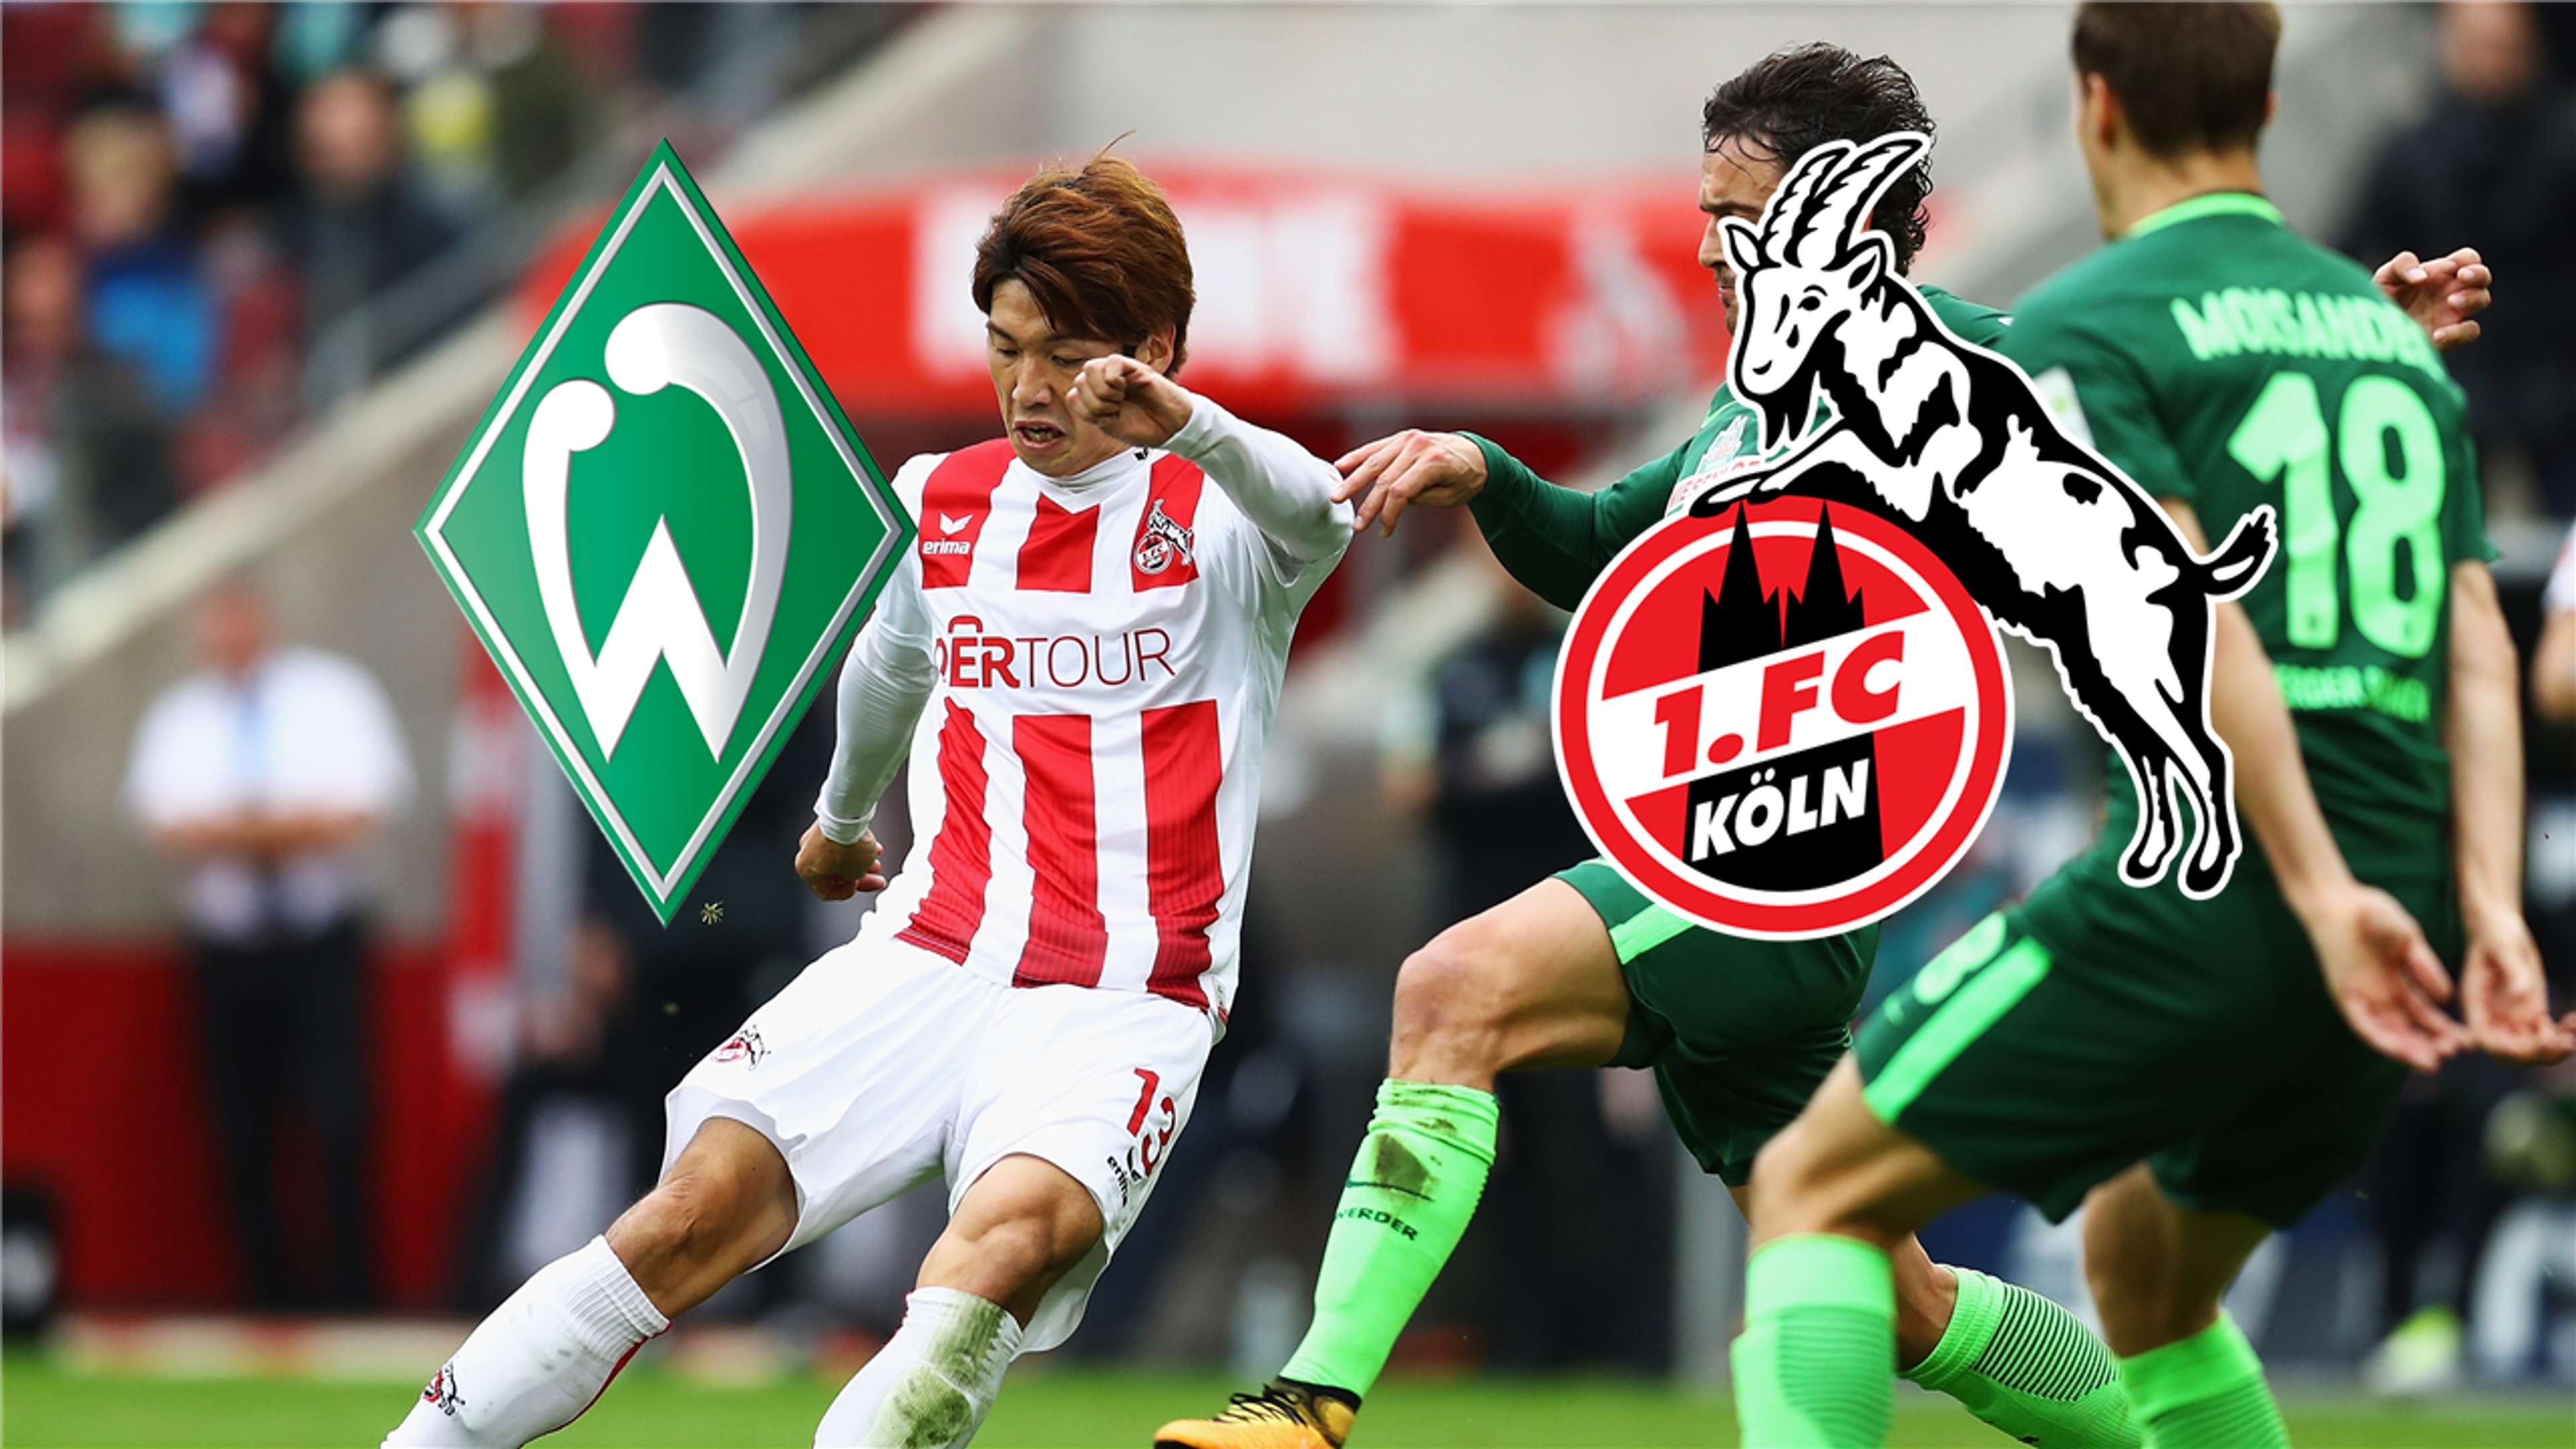 GFX Werder Bremen 1. FC Köln LIVE STREAM TV